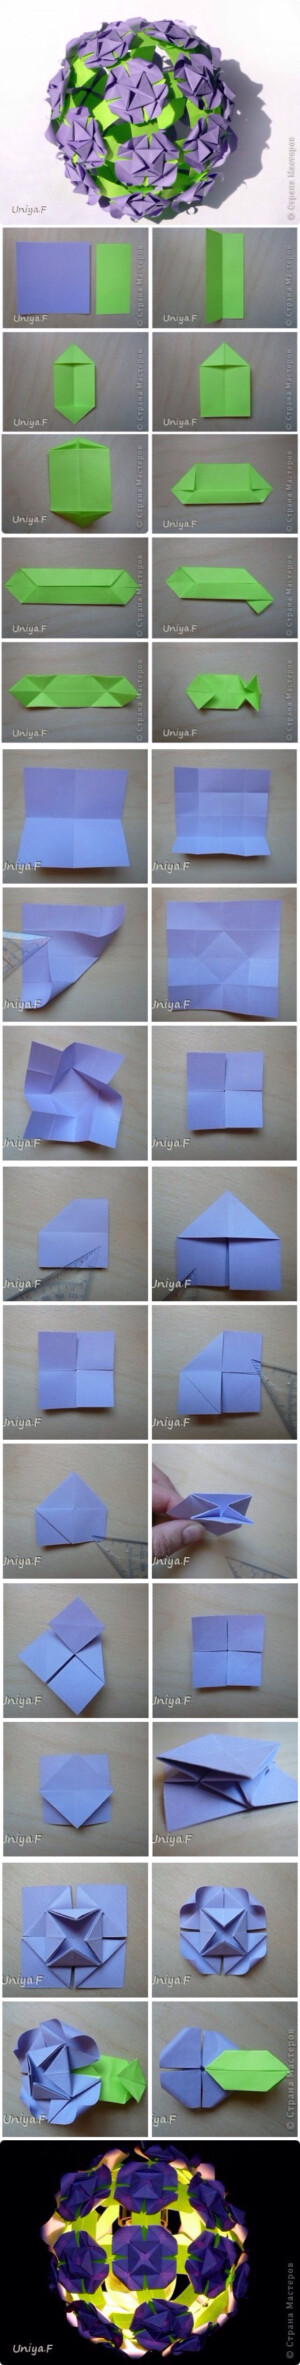  折纸花球教程，用纸：24张9*9cm，48张4.5*9cm